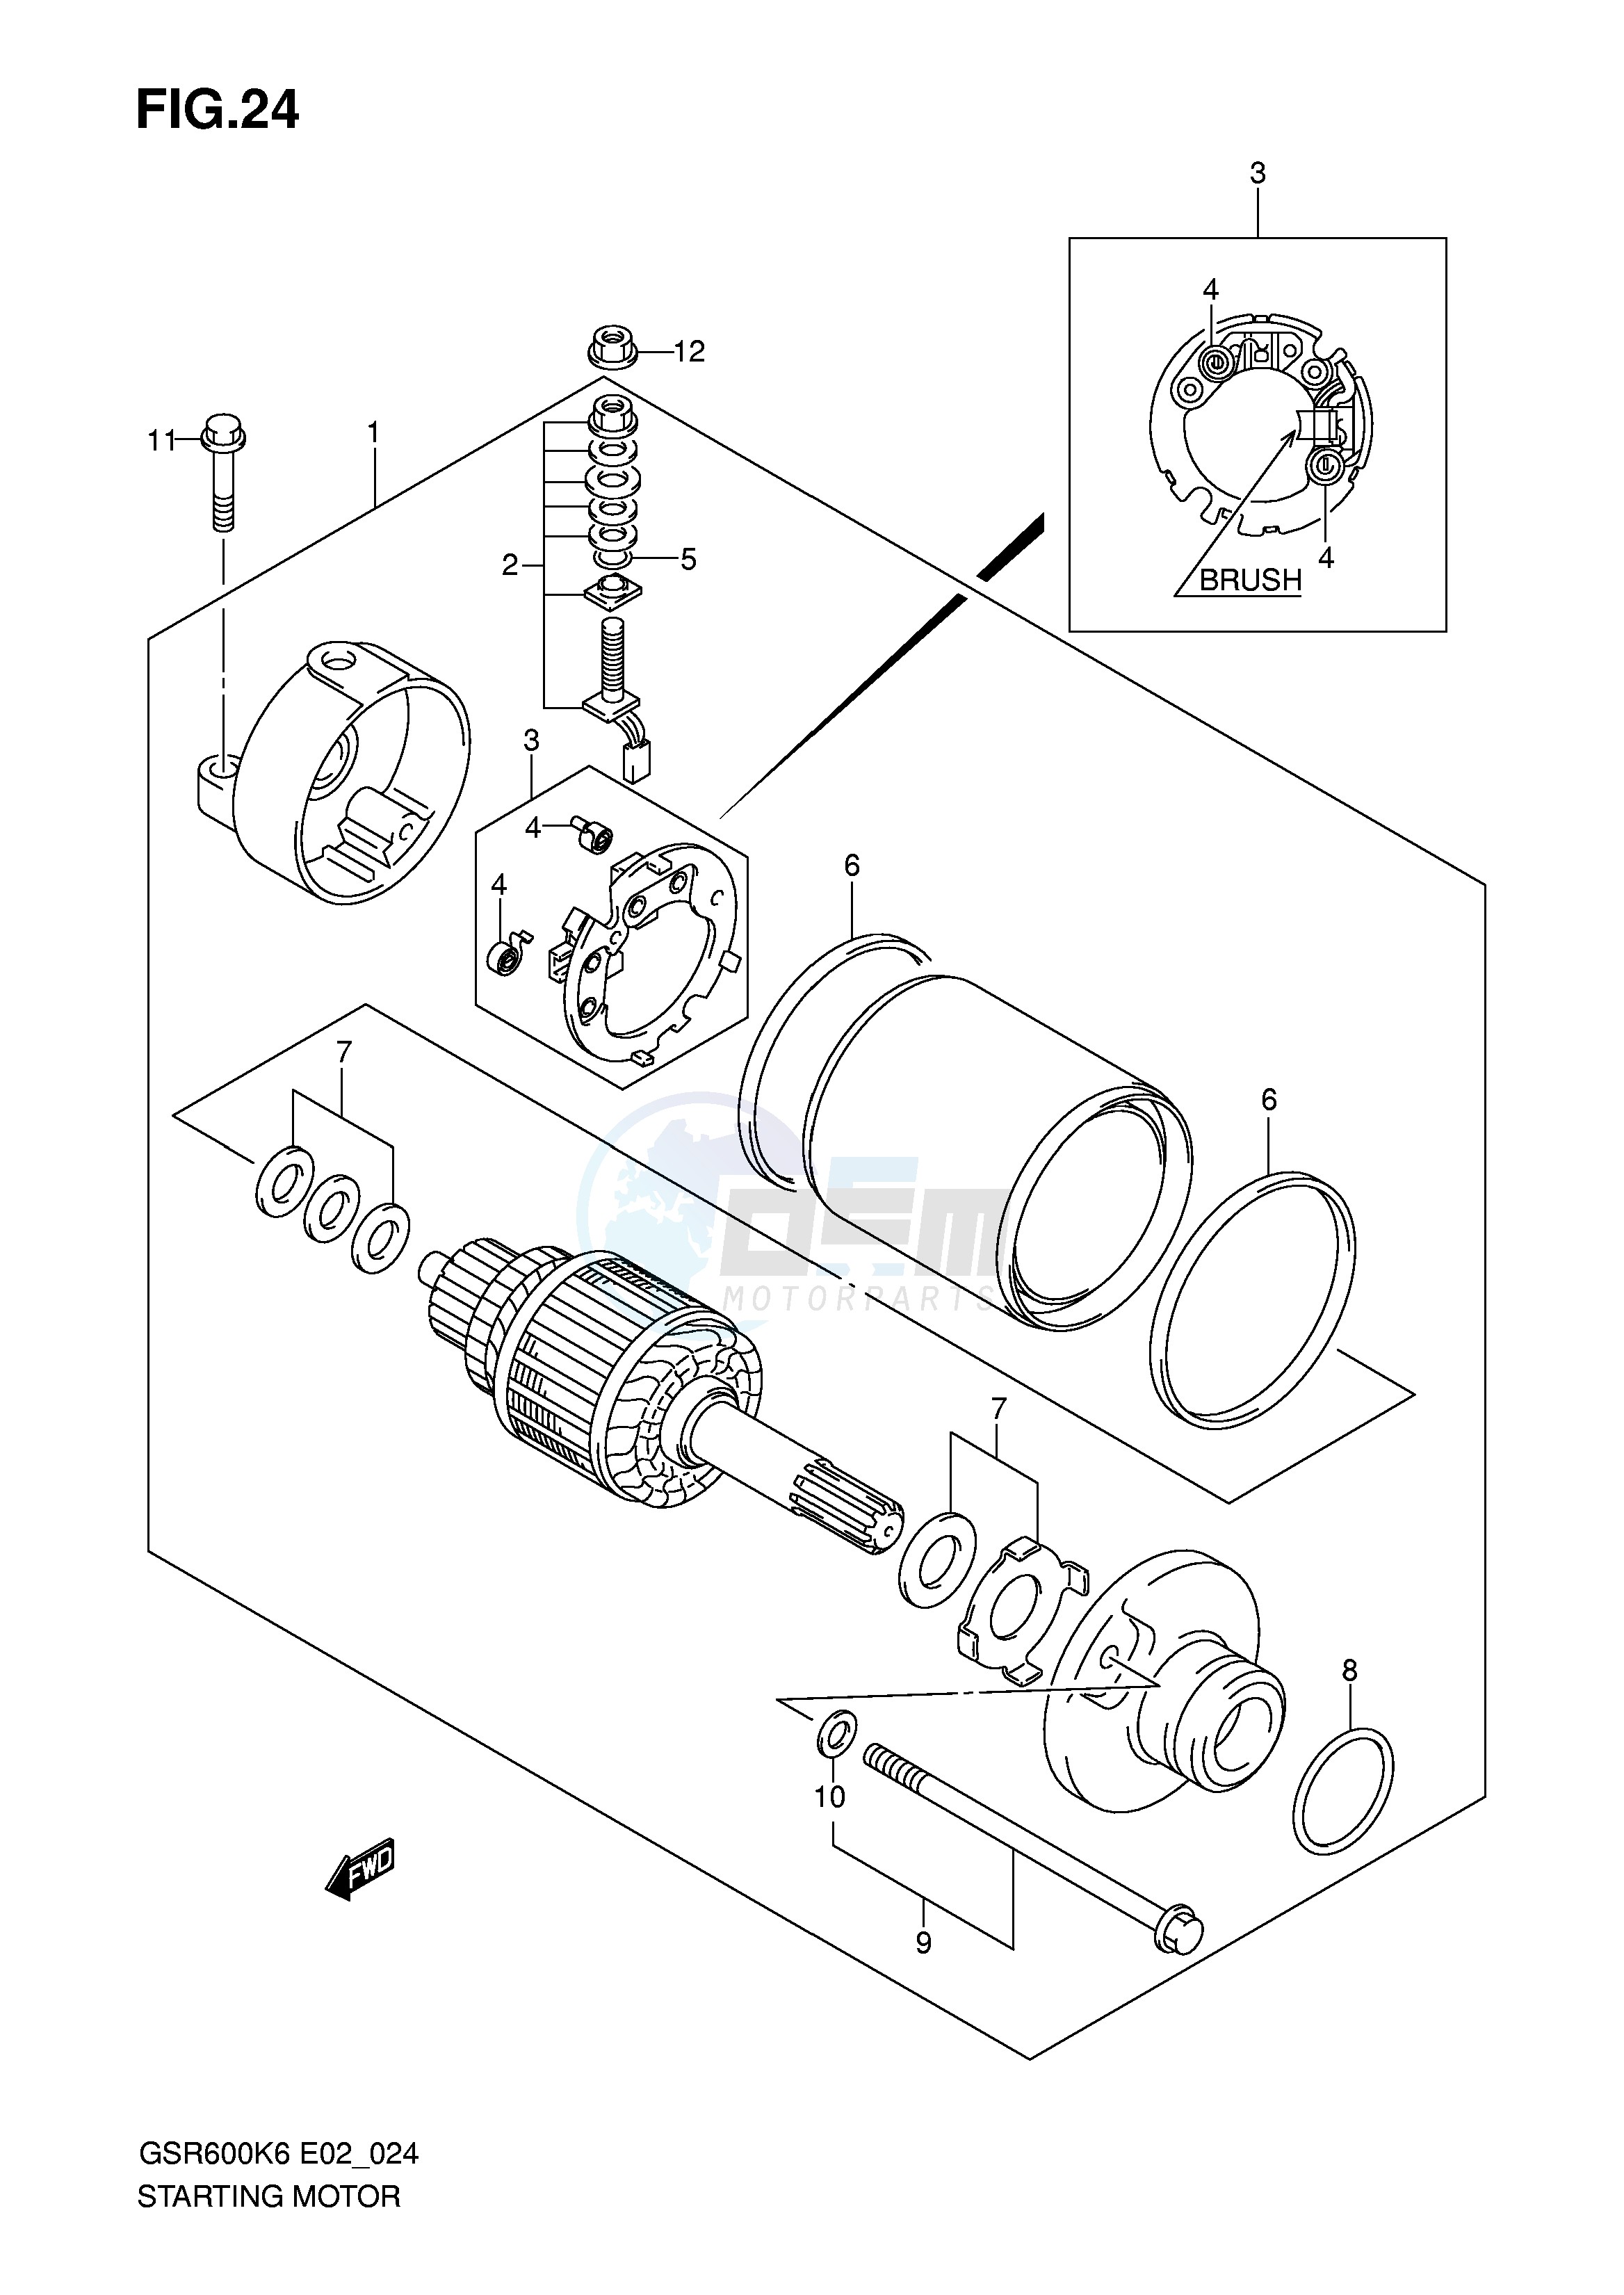 STARTING MOTOR (MODEL K6 K7) blueprint